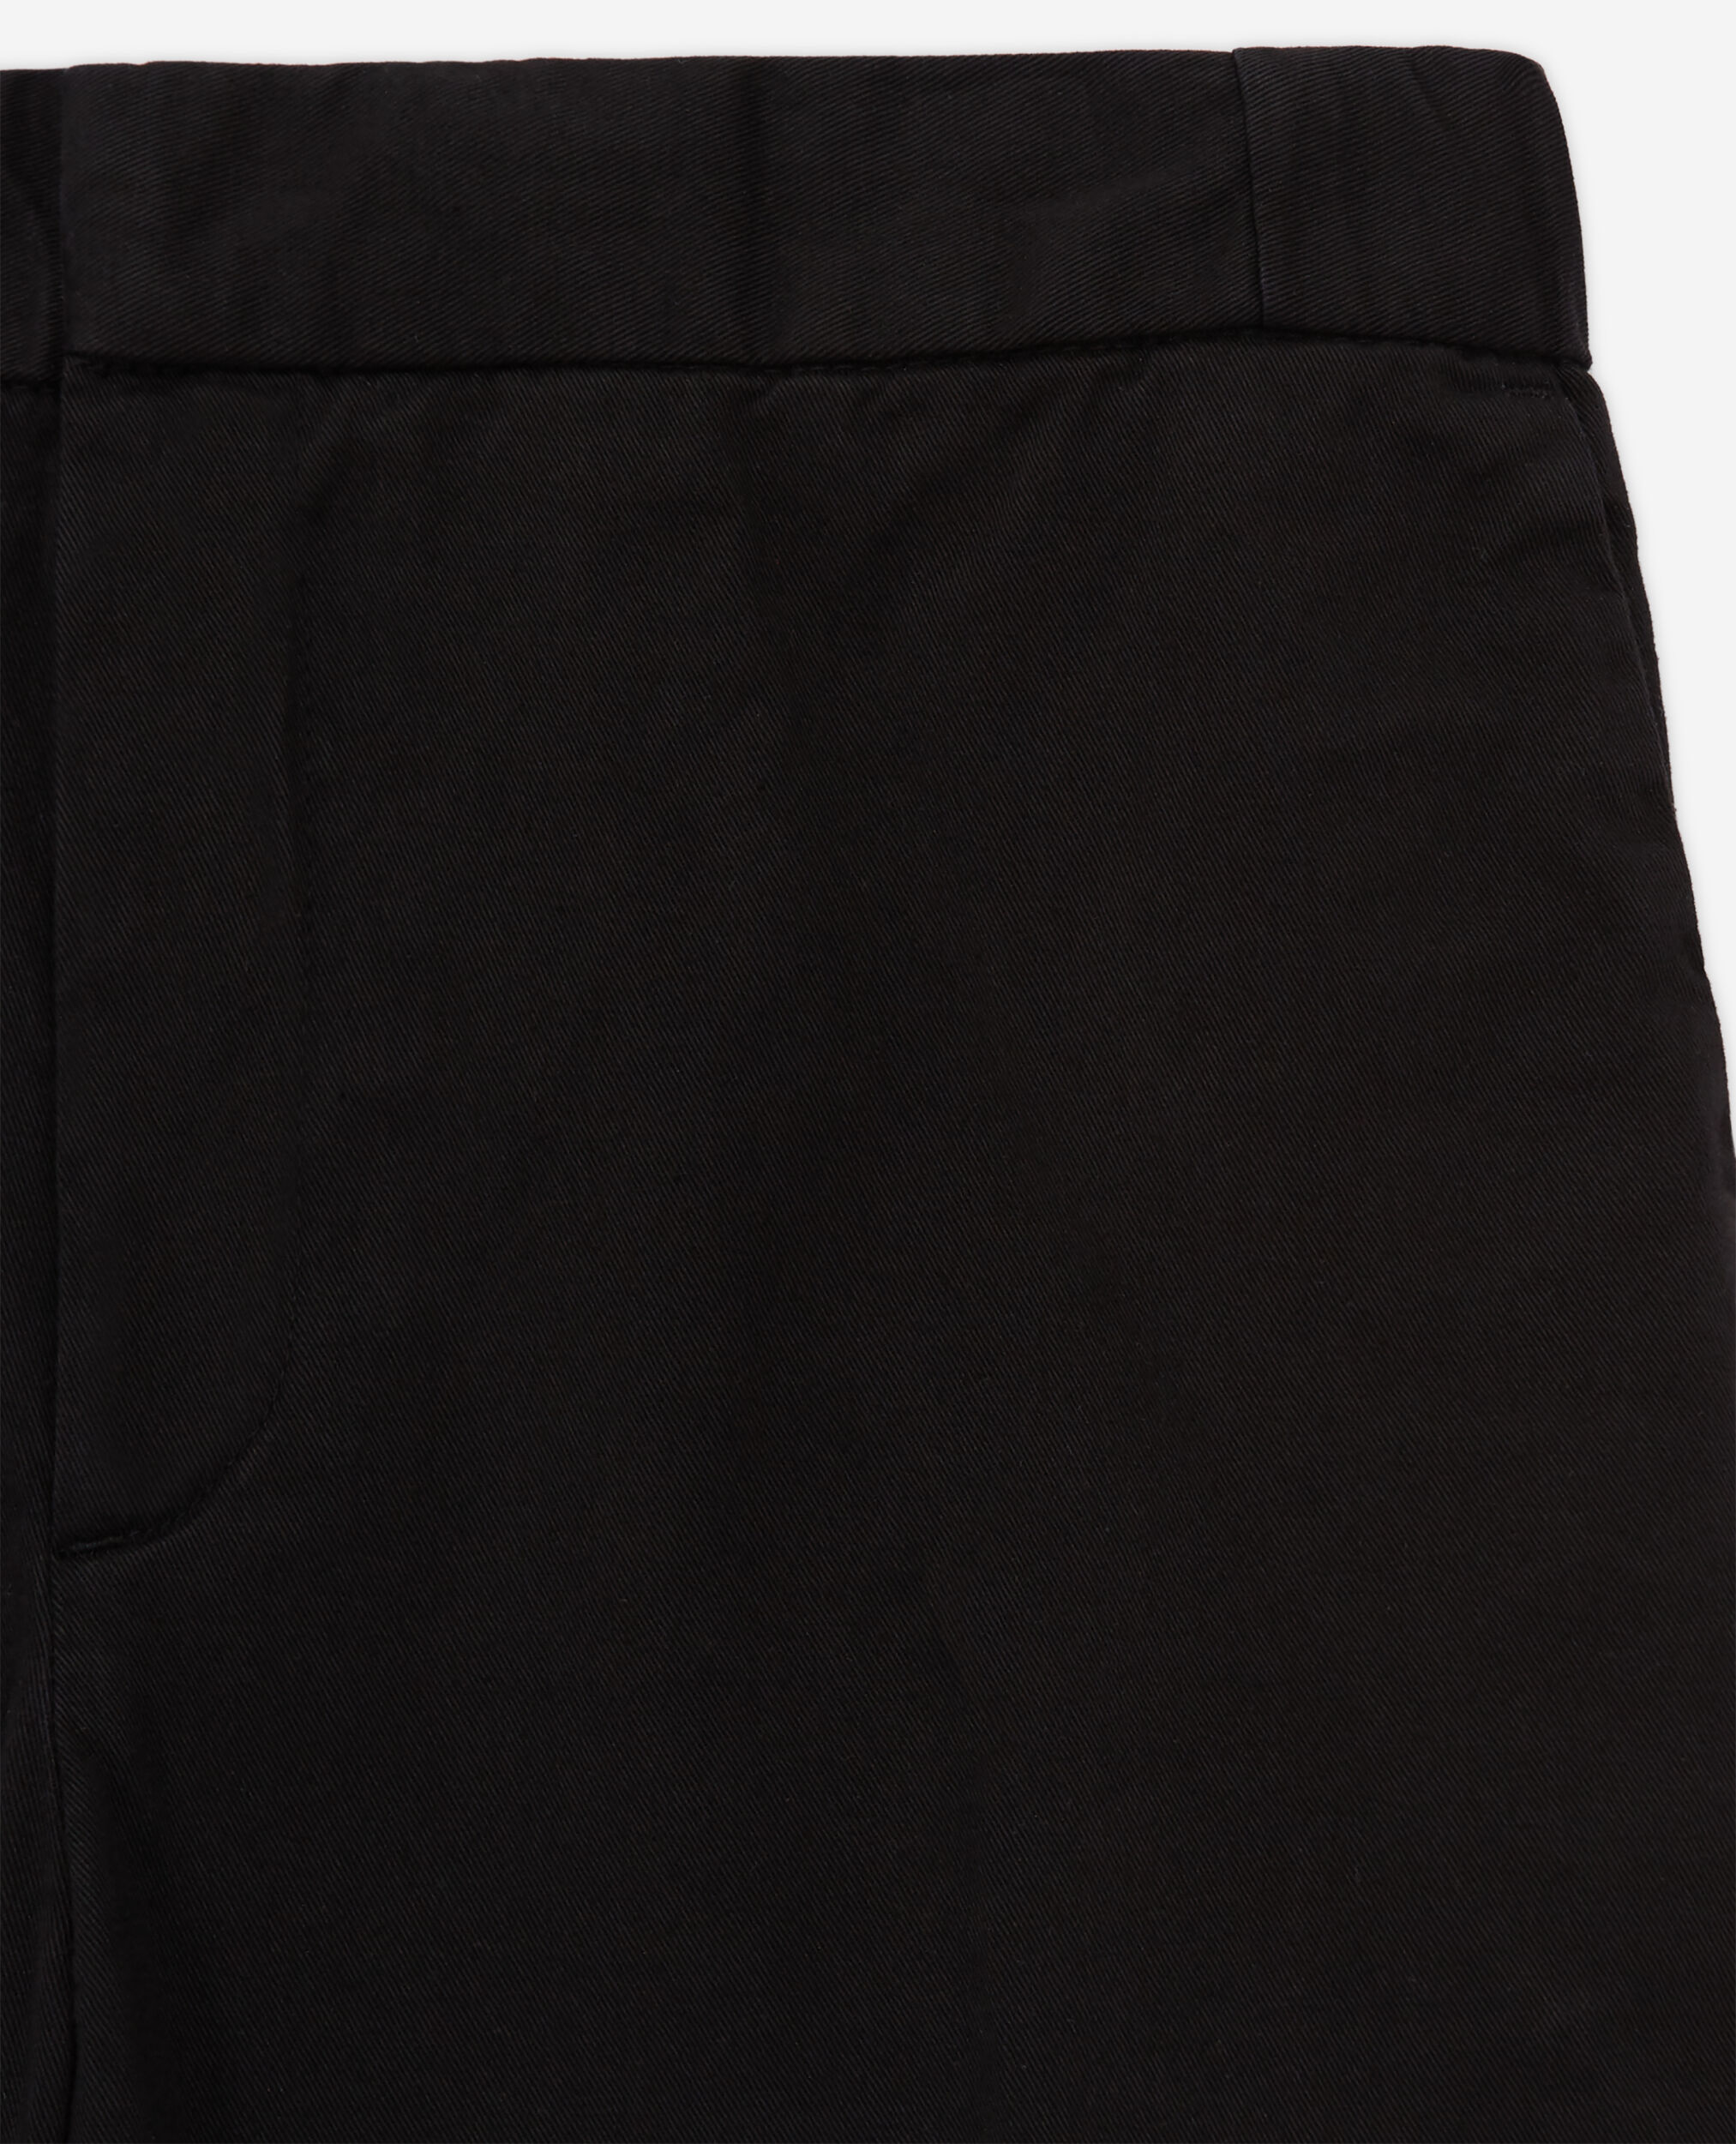 Pantalon droit noir, BLACK, hi-res image number null